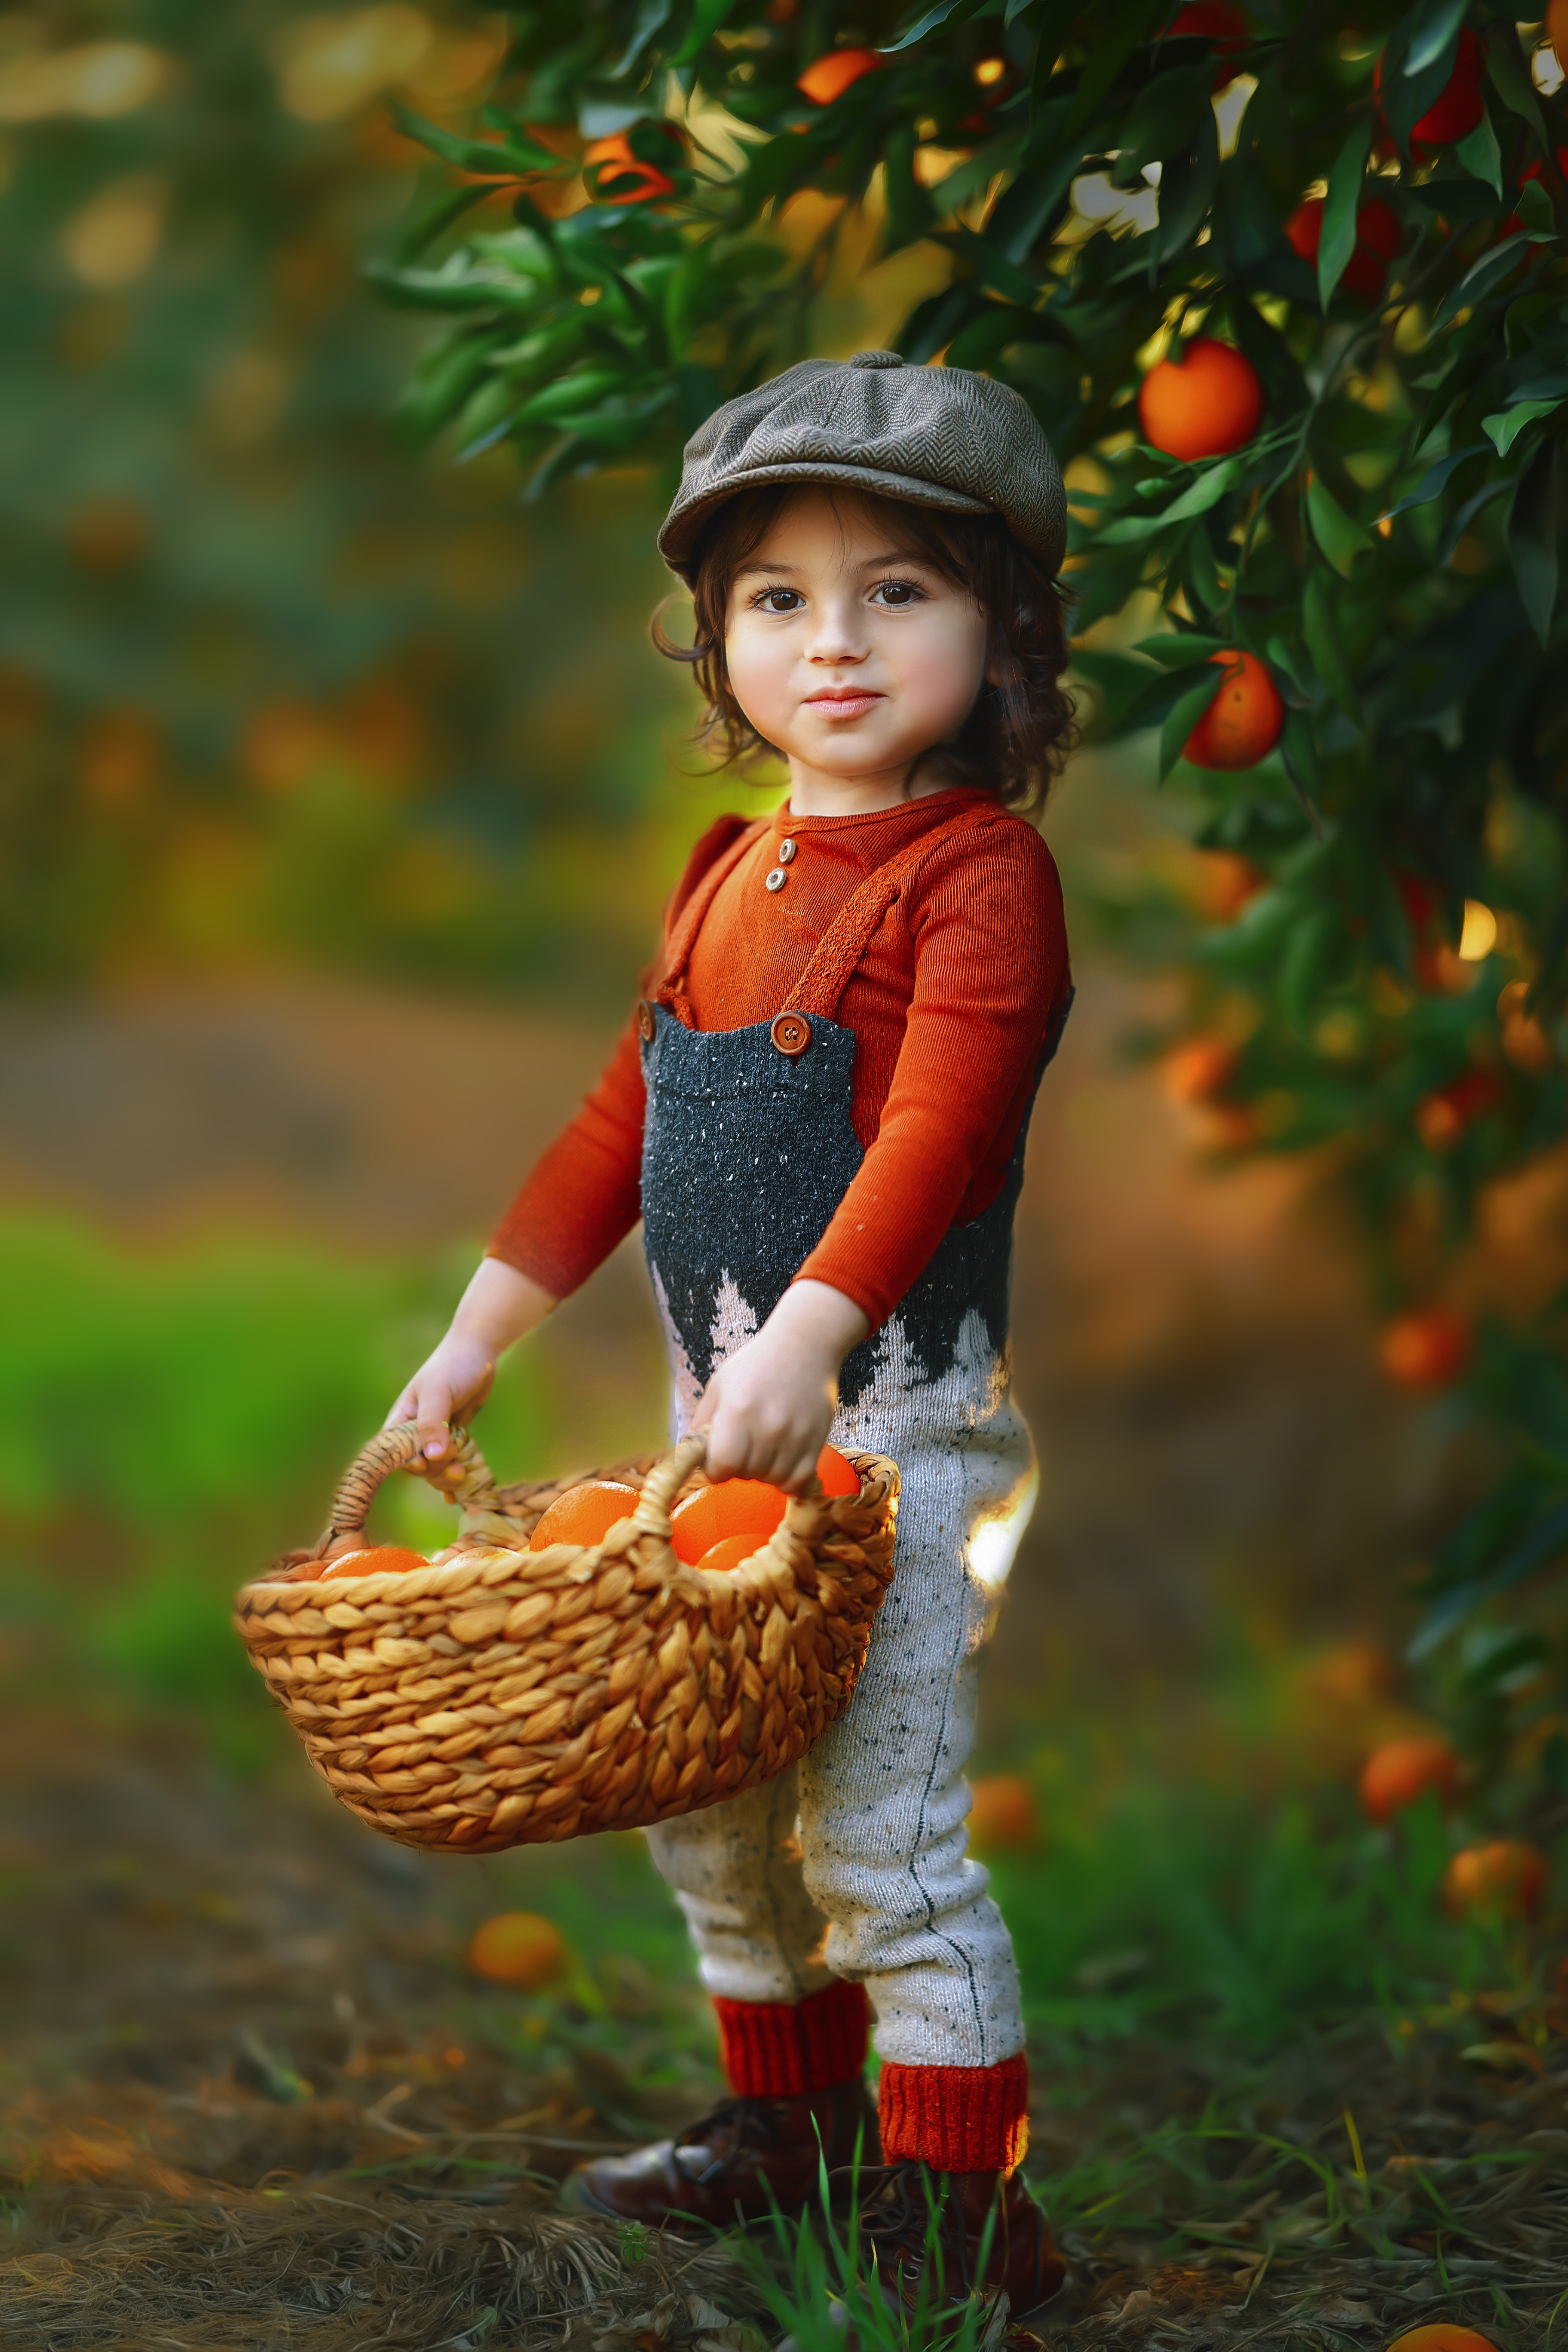 רבקה זץ צילומי ילדים בפרדס תפוזים (1).jpg